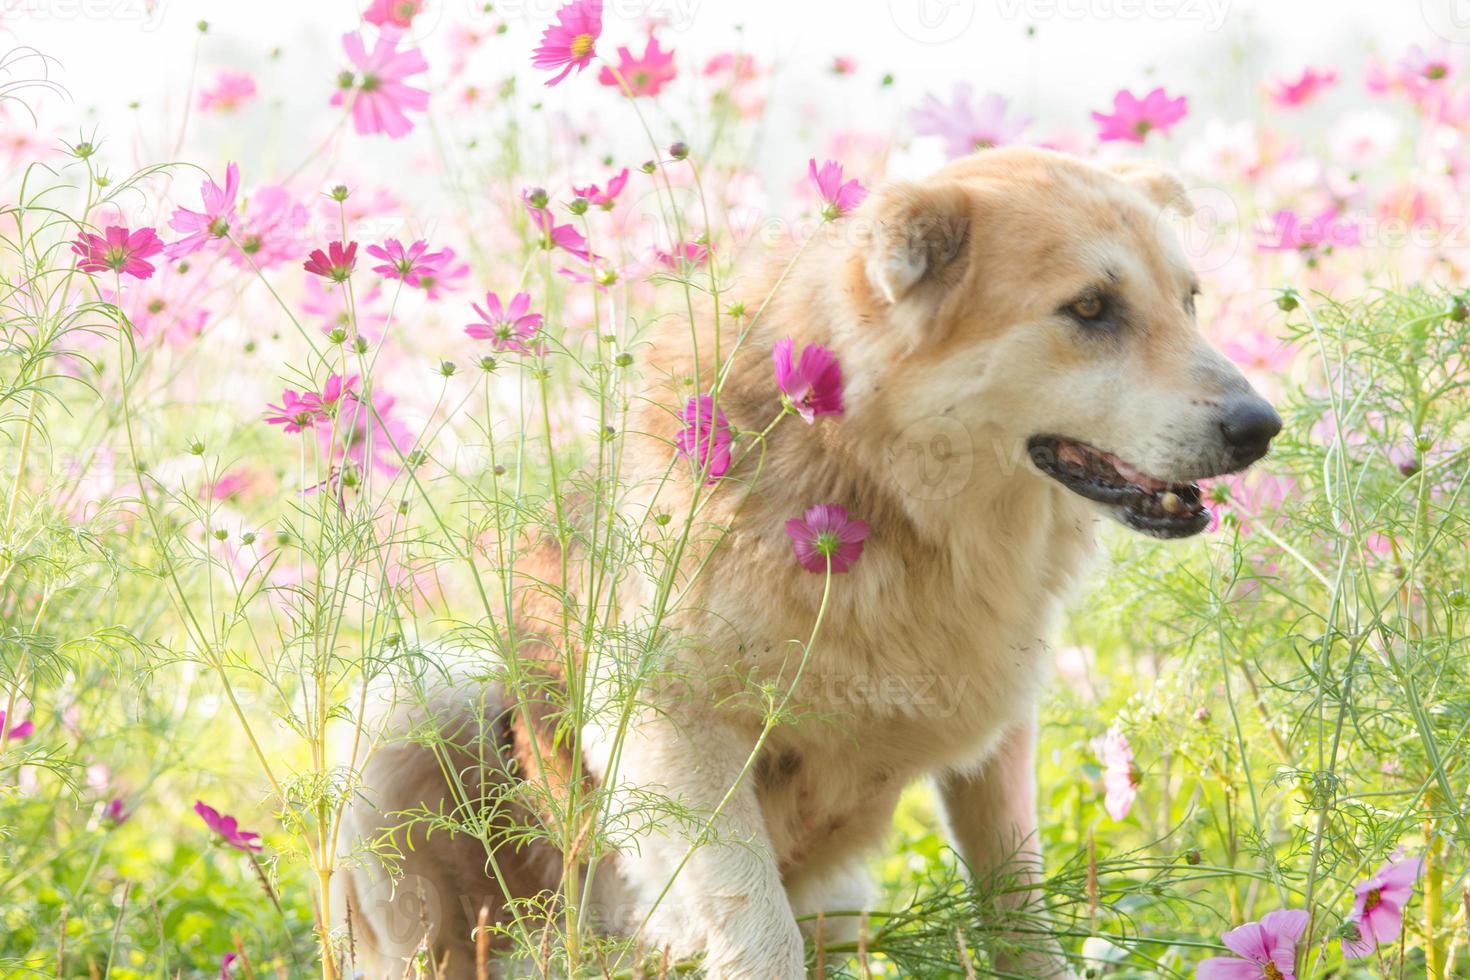 cane sfocato e fiore per lo sfondo foto